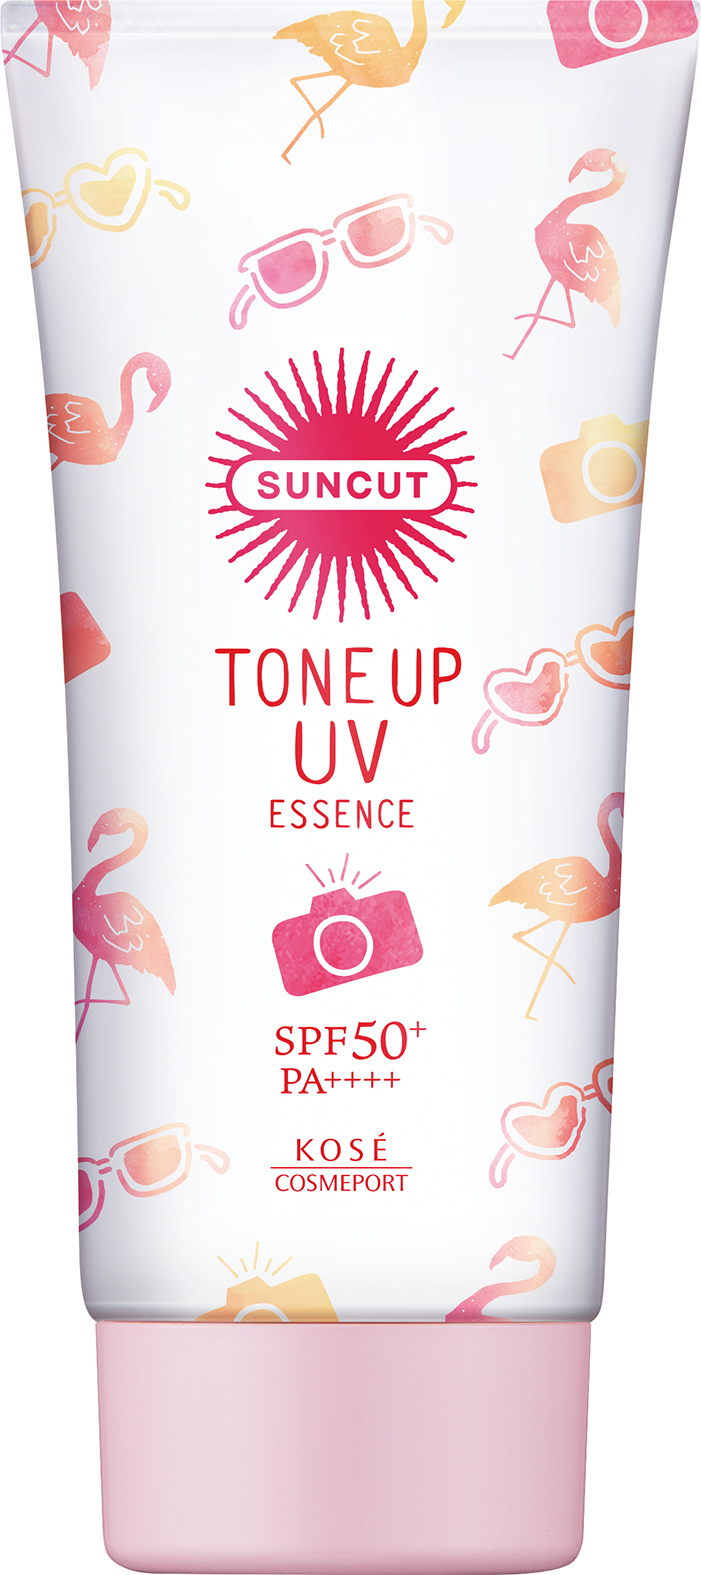 Essence Chống Nắng Nâng Tone Da Suncut Tone Up UV SPF 50+ PA++++ Màu Hồng